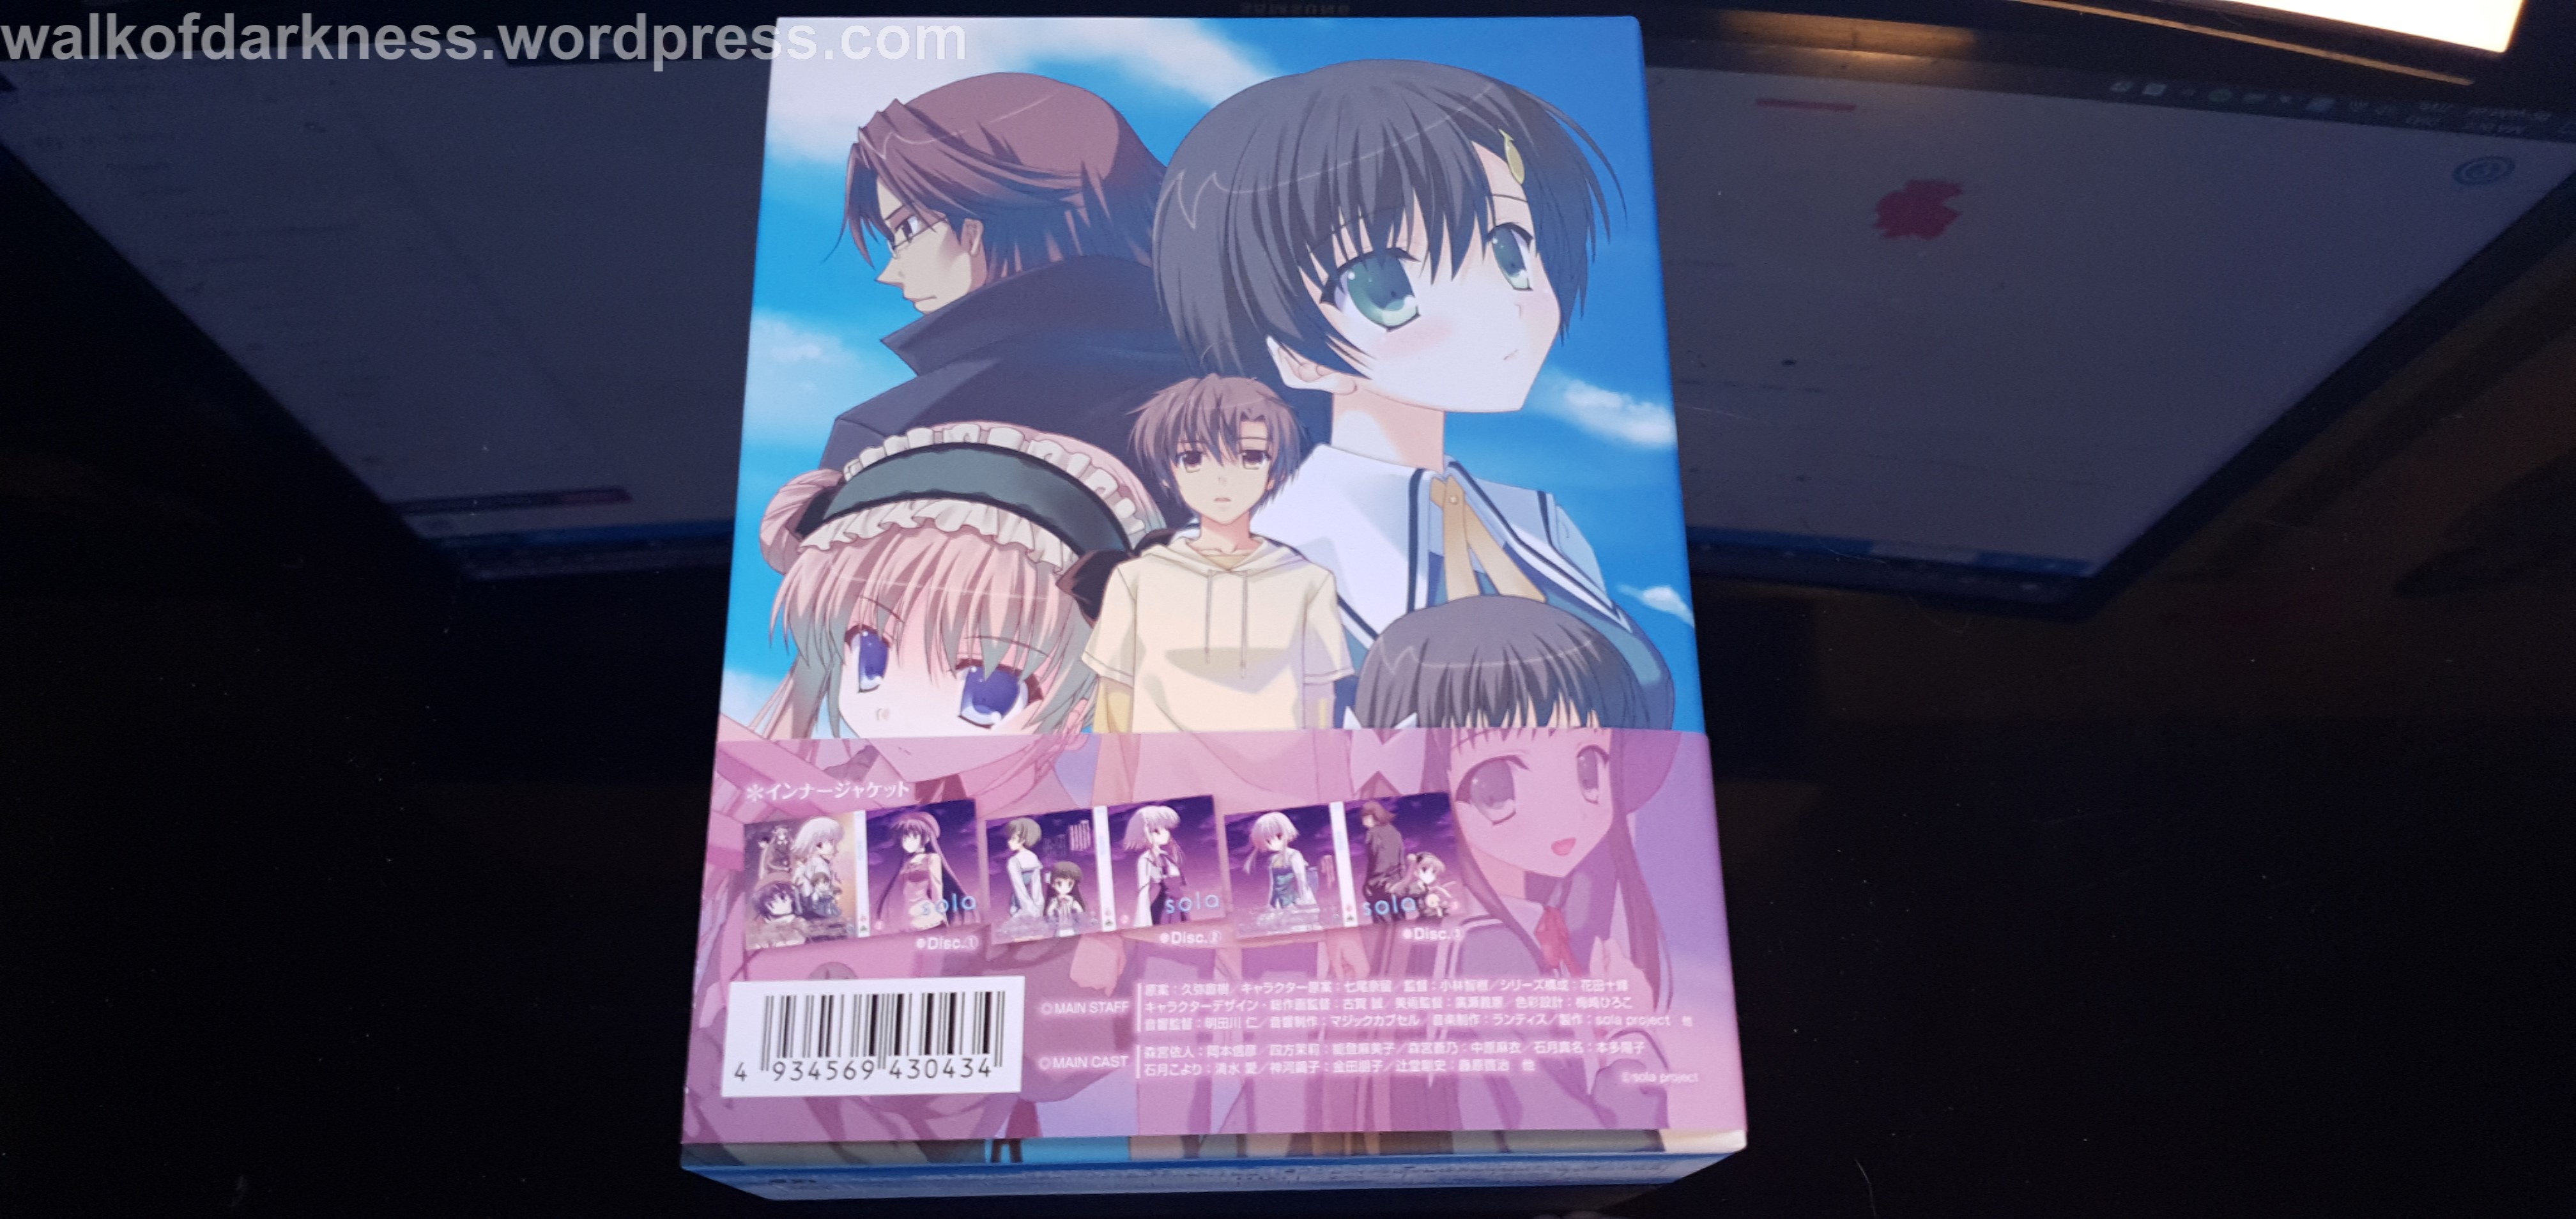 Kyoukai no Kanata Blu-ray Boxset Announced & Slated for February